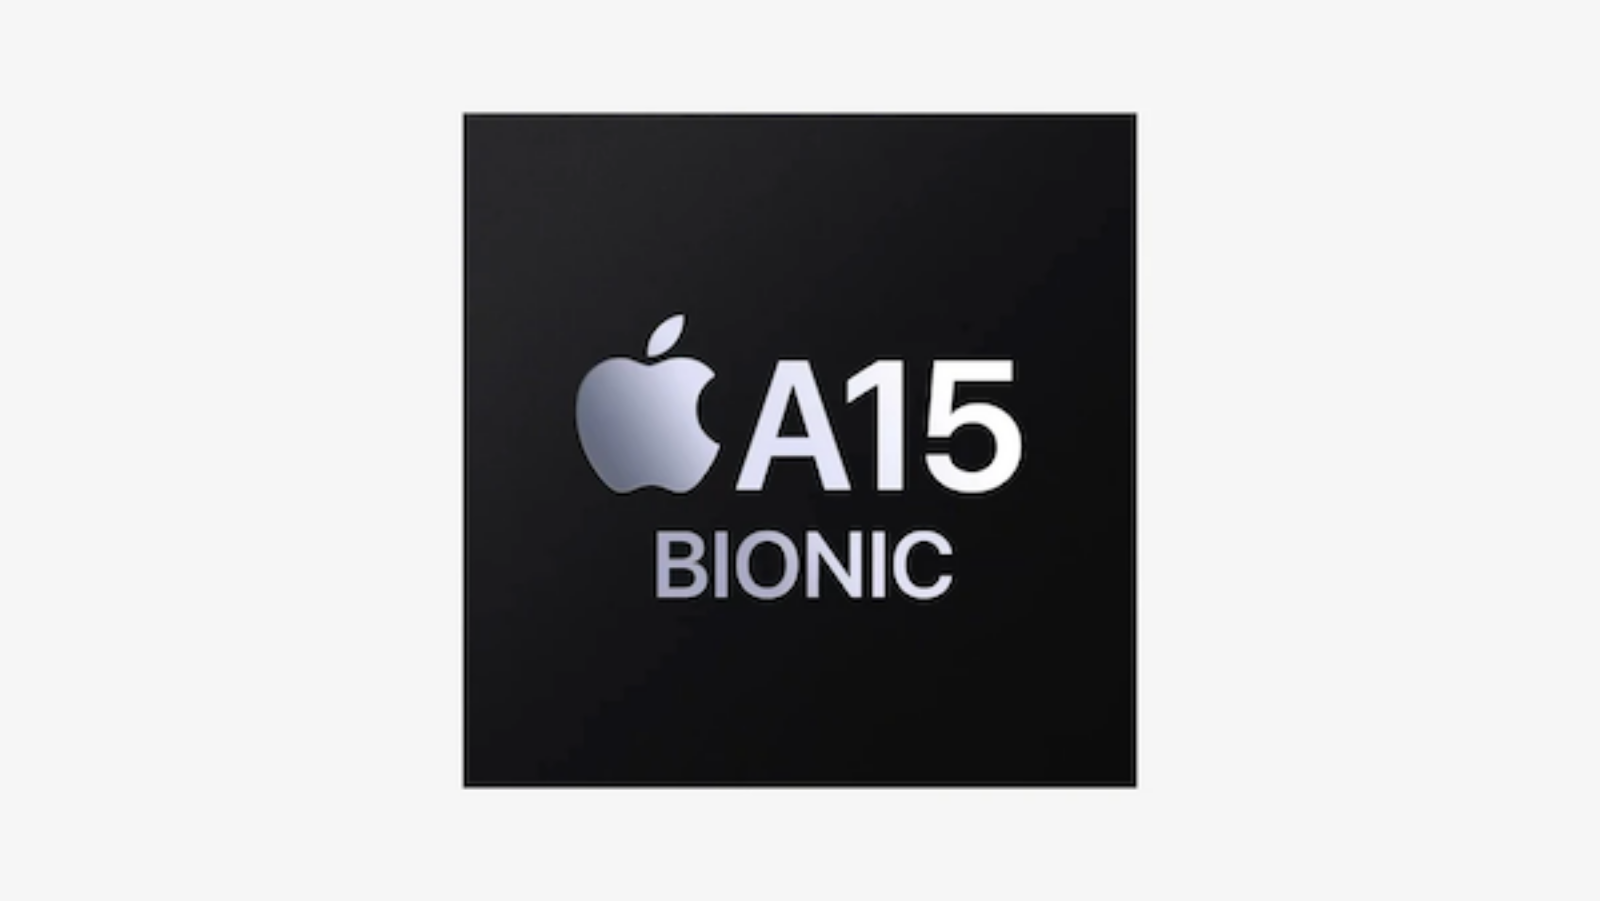 Hình ảnh cho danh mục 4 ưu điểm của chip A15 Bionic - Thách thức mọi tác vụ!